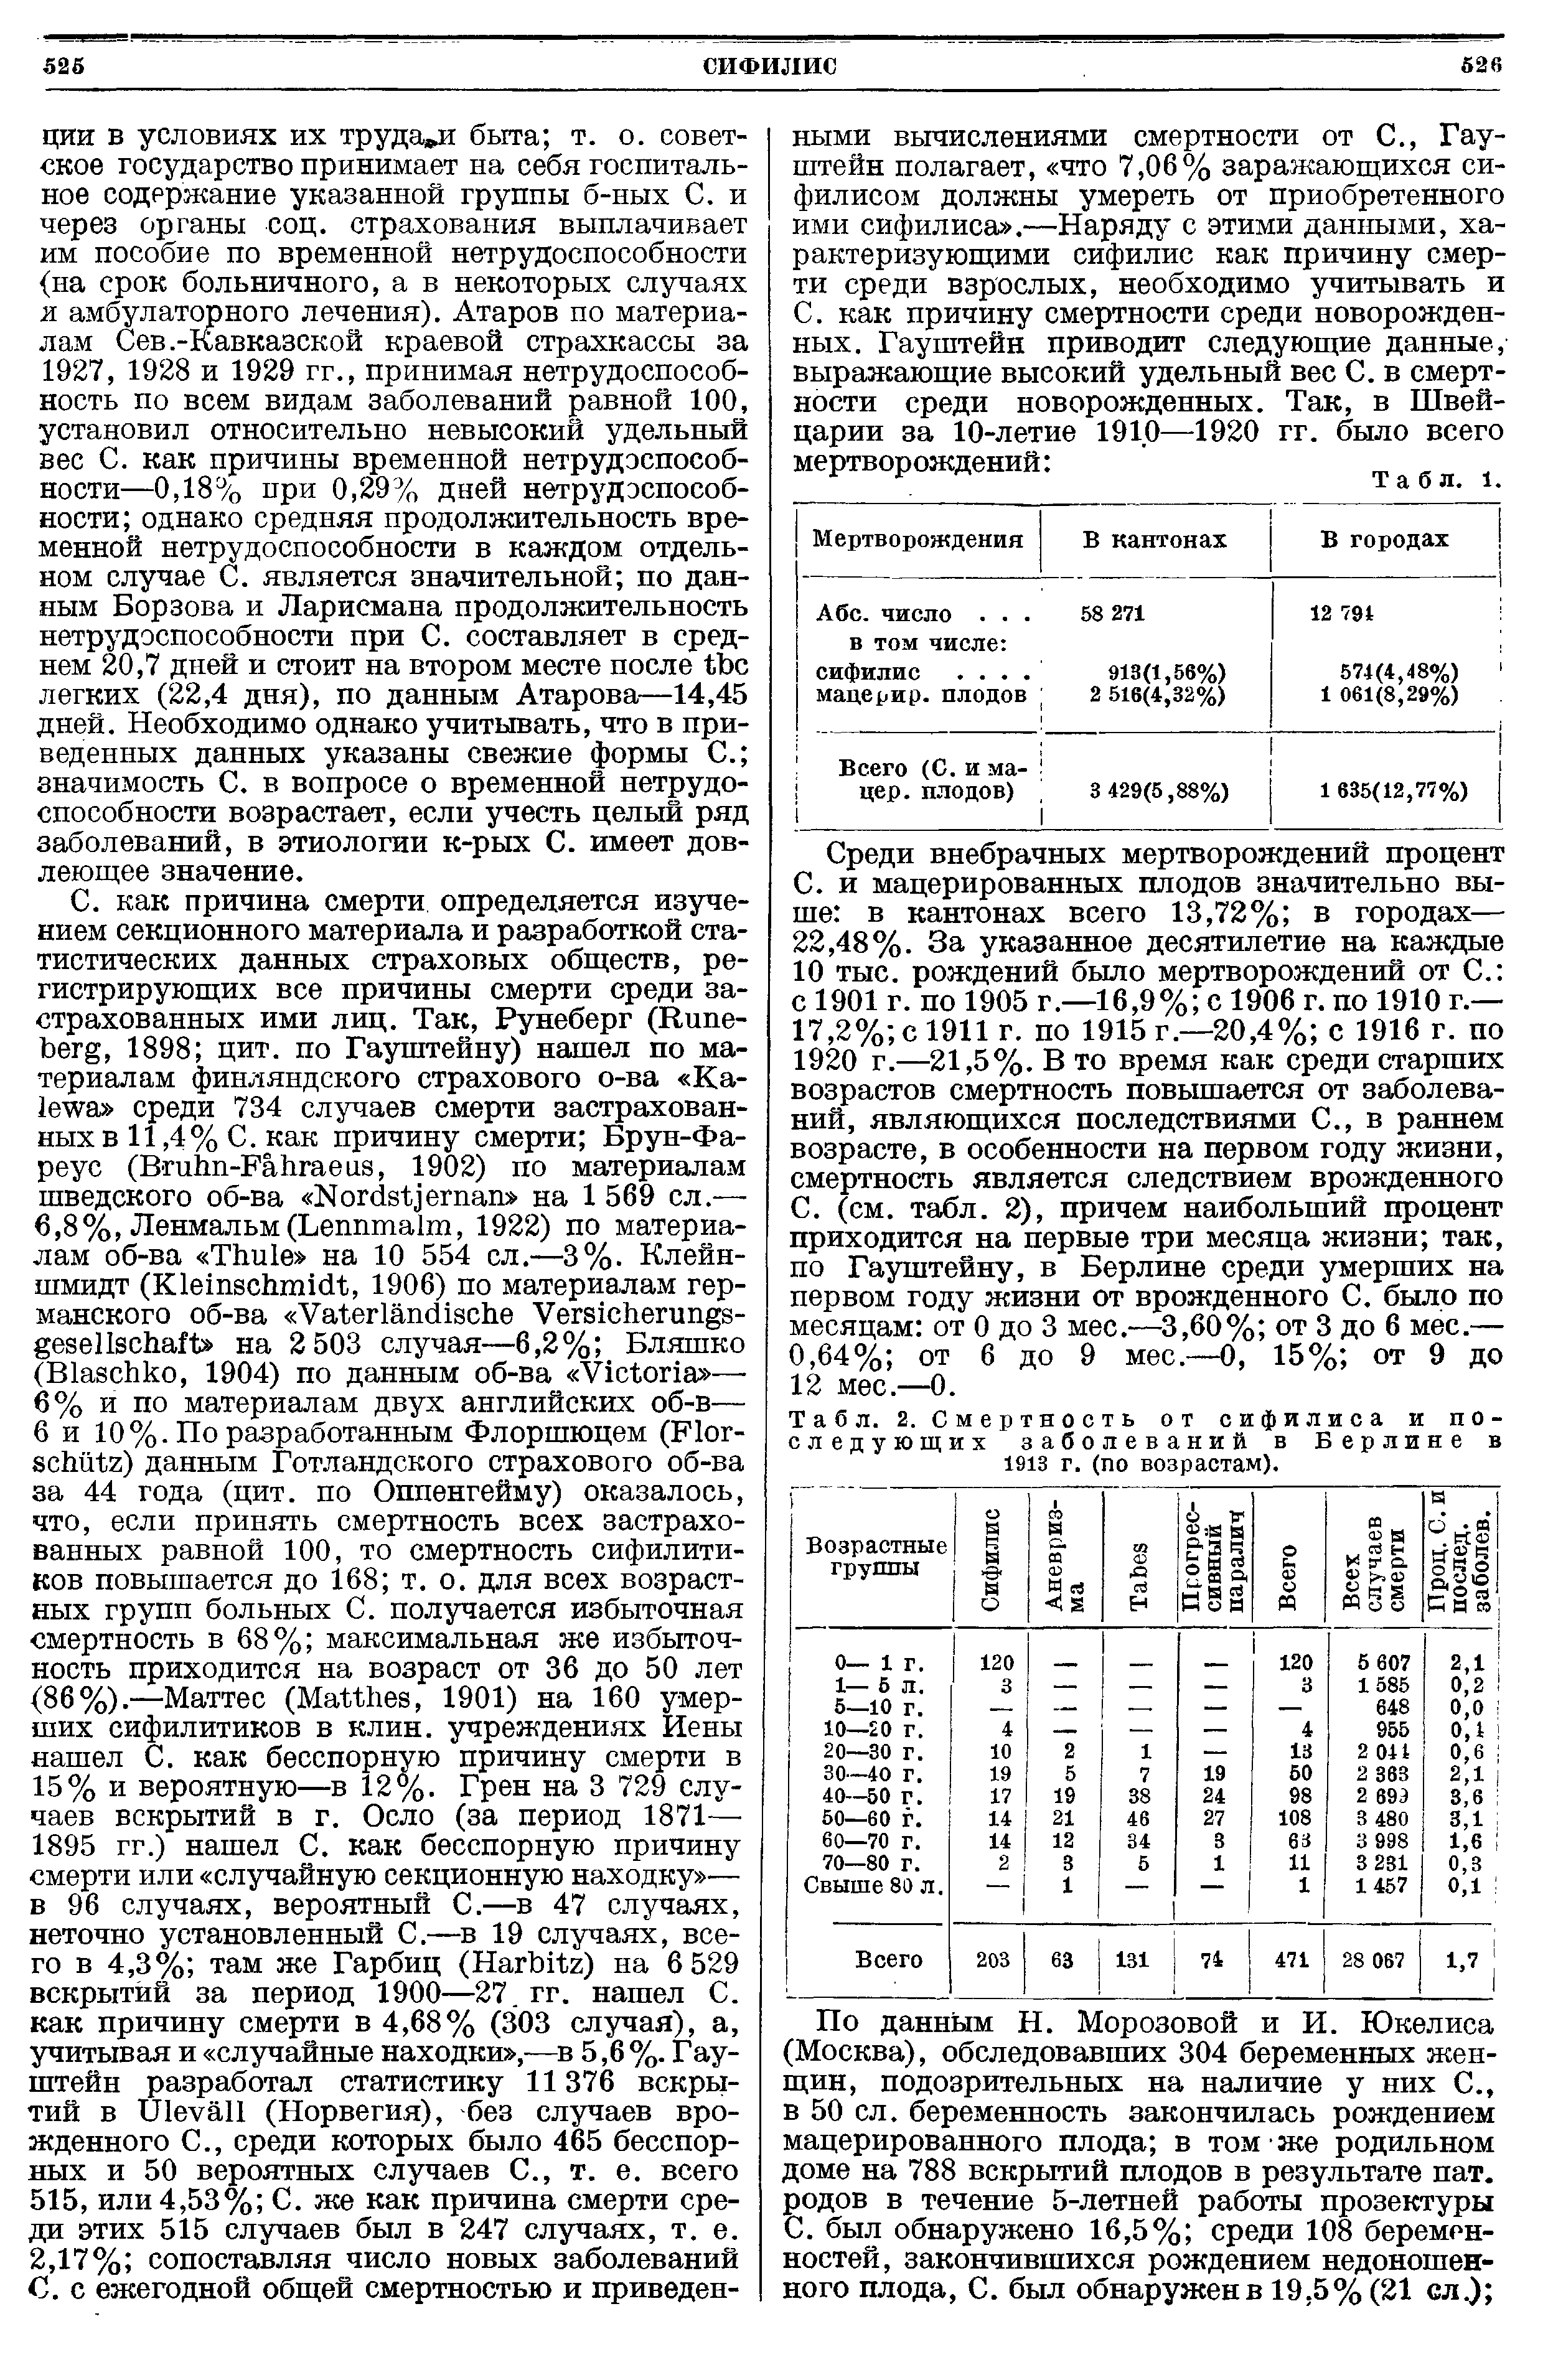 Табл. 2. Смертность от сифилиса и последующих заболеваний в Берлине в 1913 г. (по возрастам).